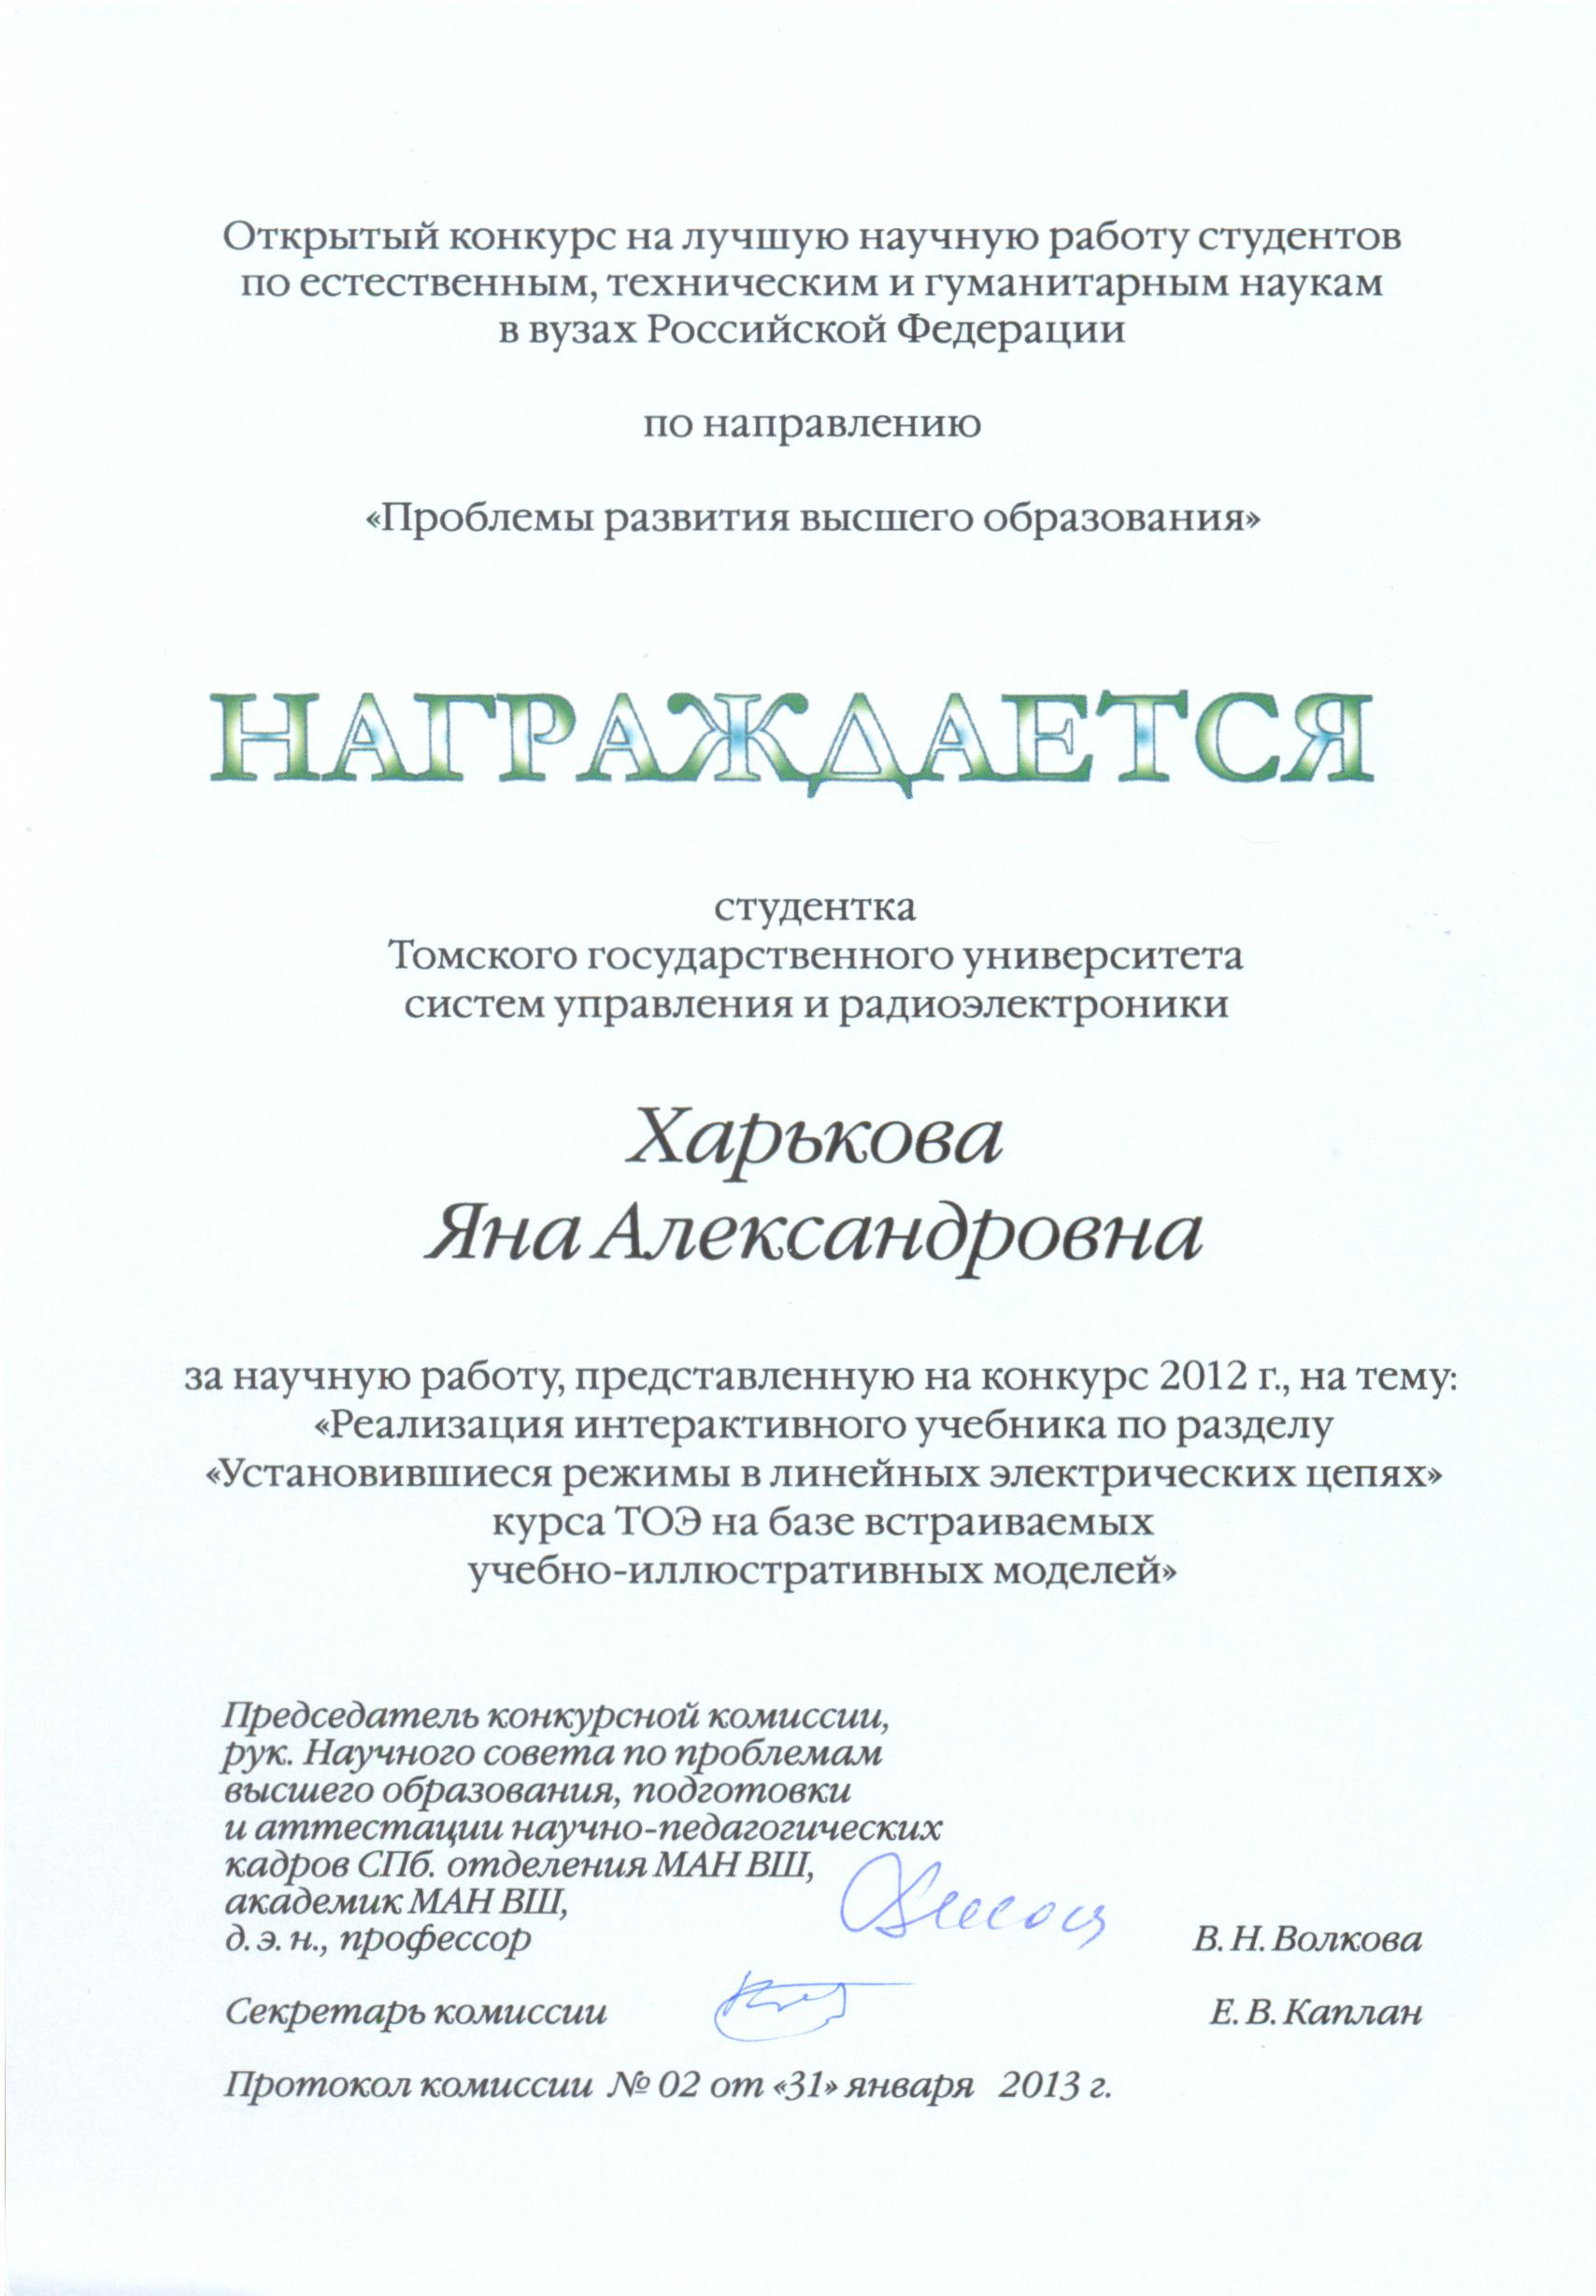 Награждены дипломами Санкт-Петербургского государственного политехнического университета участники Открытого конкурса научных работ студентов